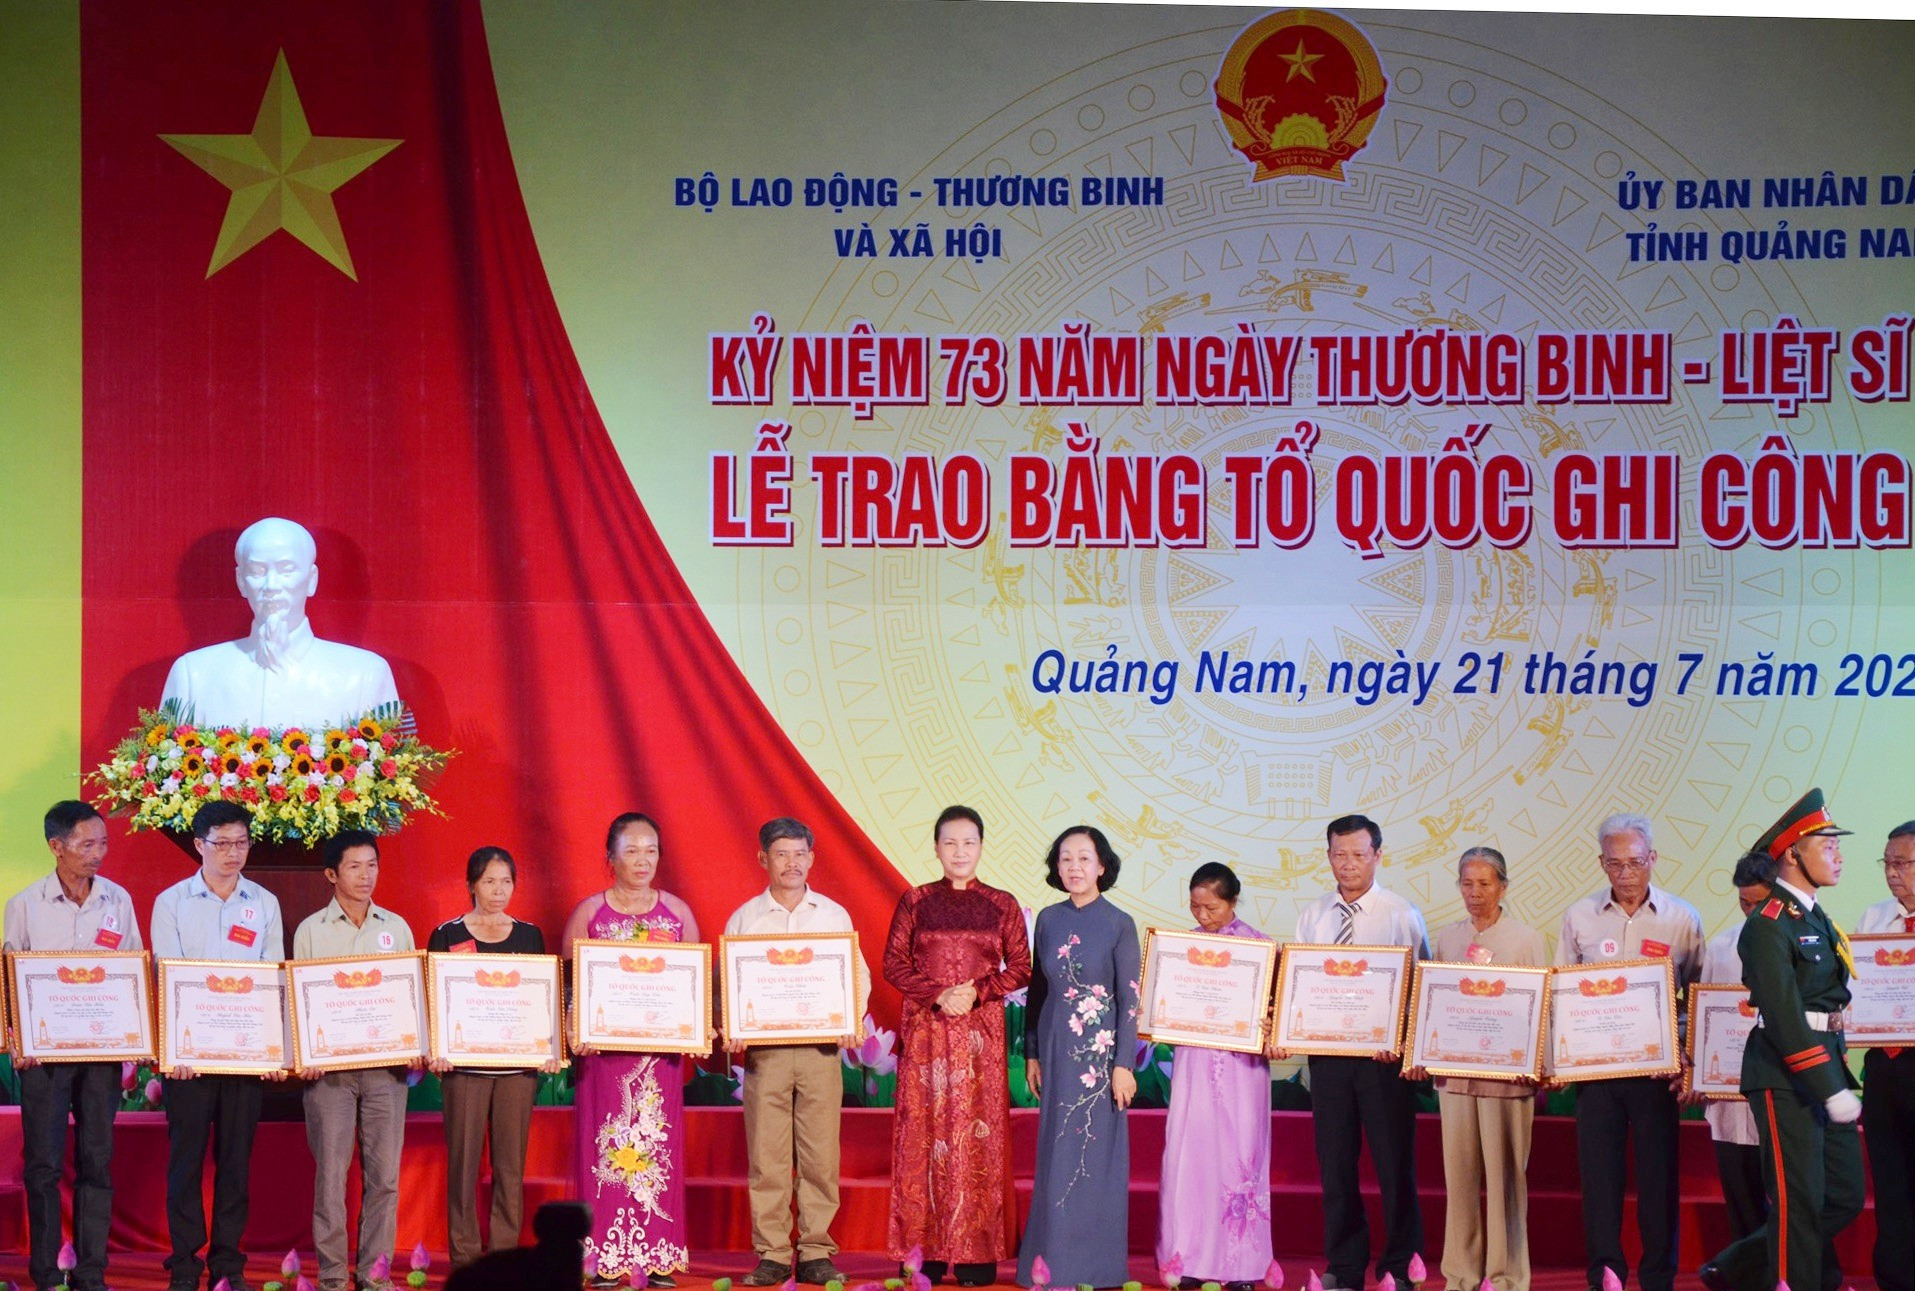 Chủ tịch Quốc hội Nguyễn Thị Kim Ngân và Trưởng ban Dân vận Trung ương Trương Thị Mai trao Bằng Tổ quốc ghi công cho thân nhân gia đình liệt sĩ